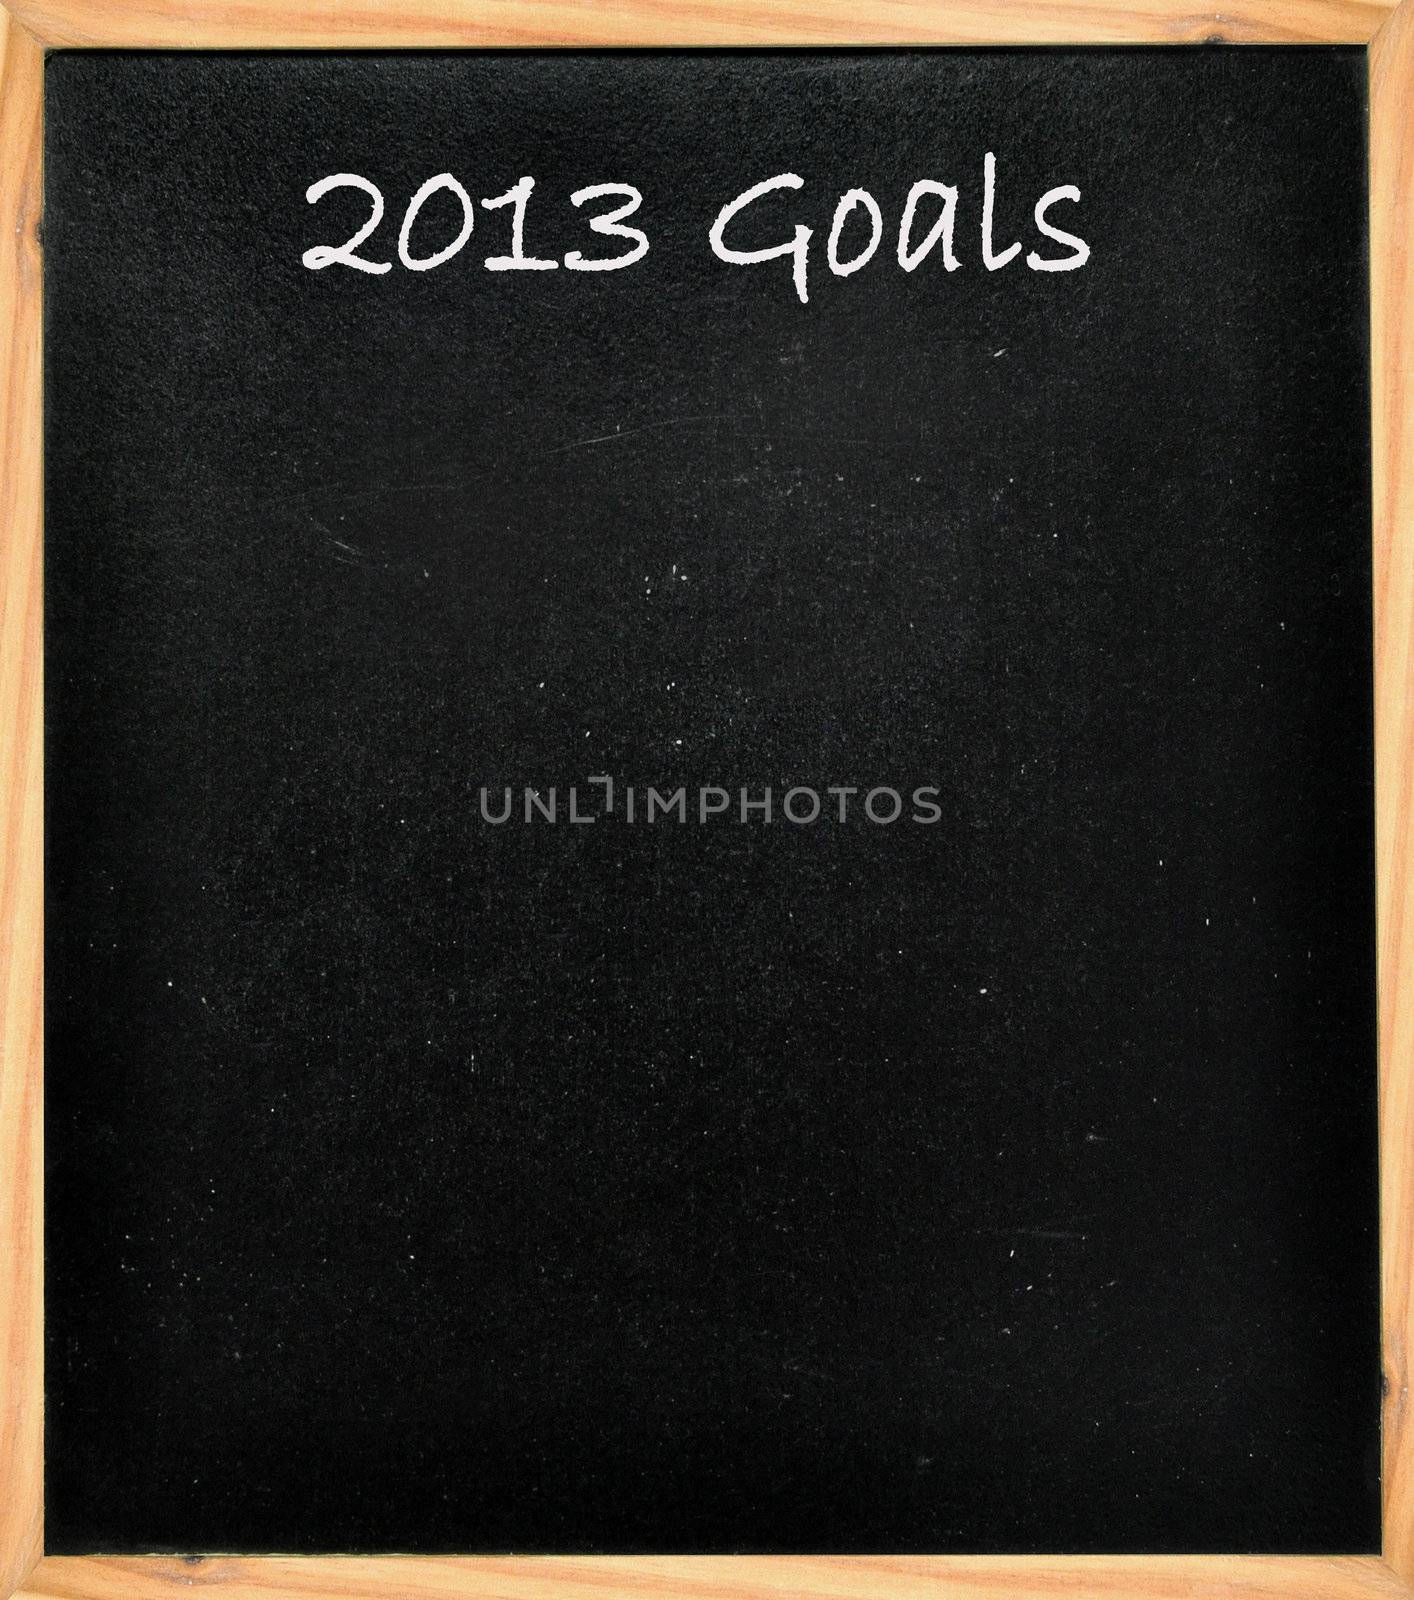 2013 goals written on a black board 